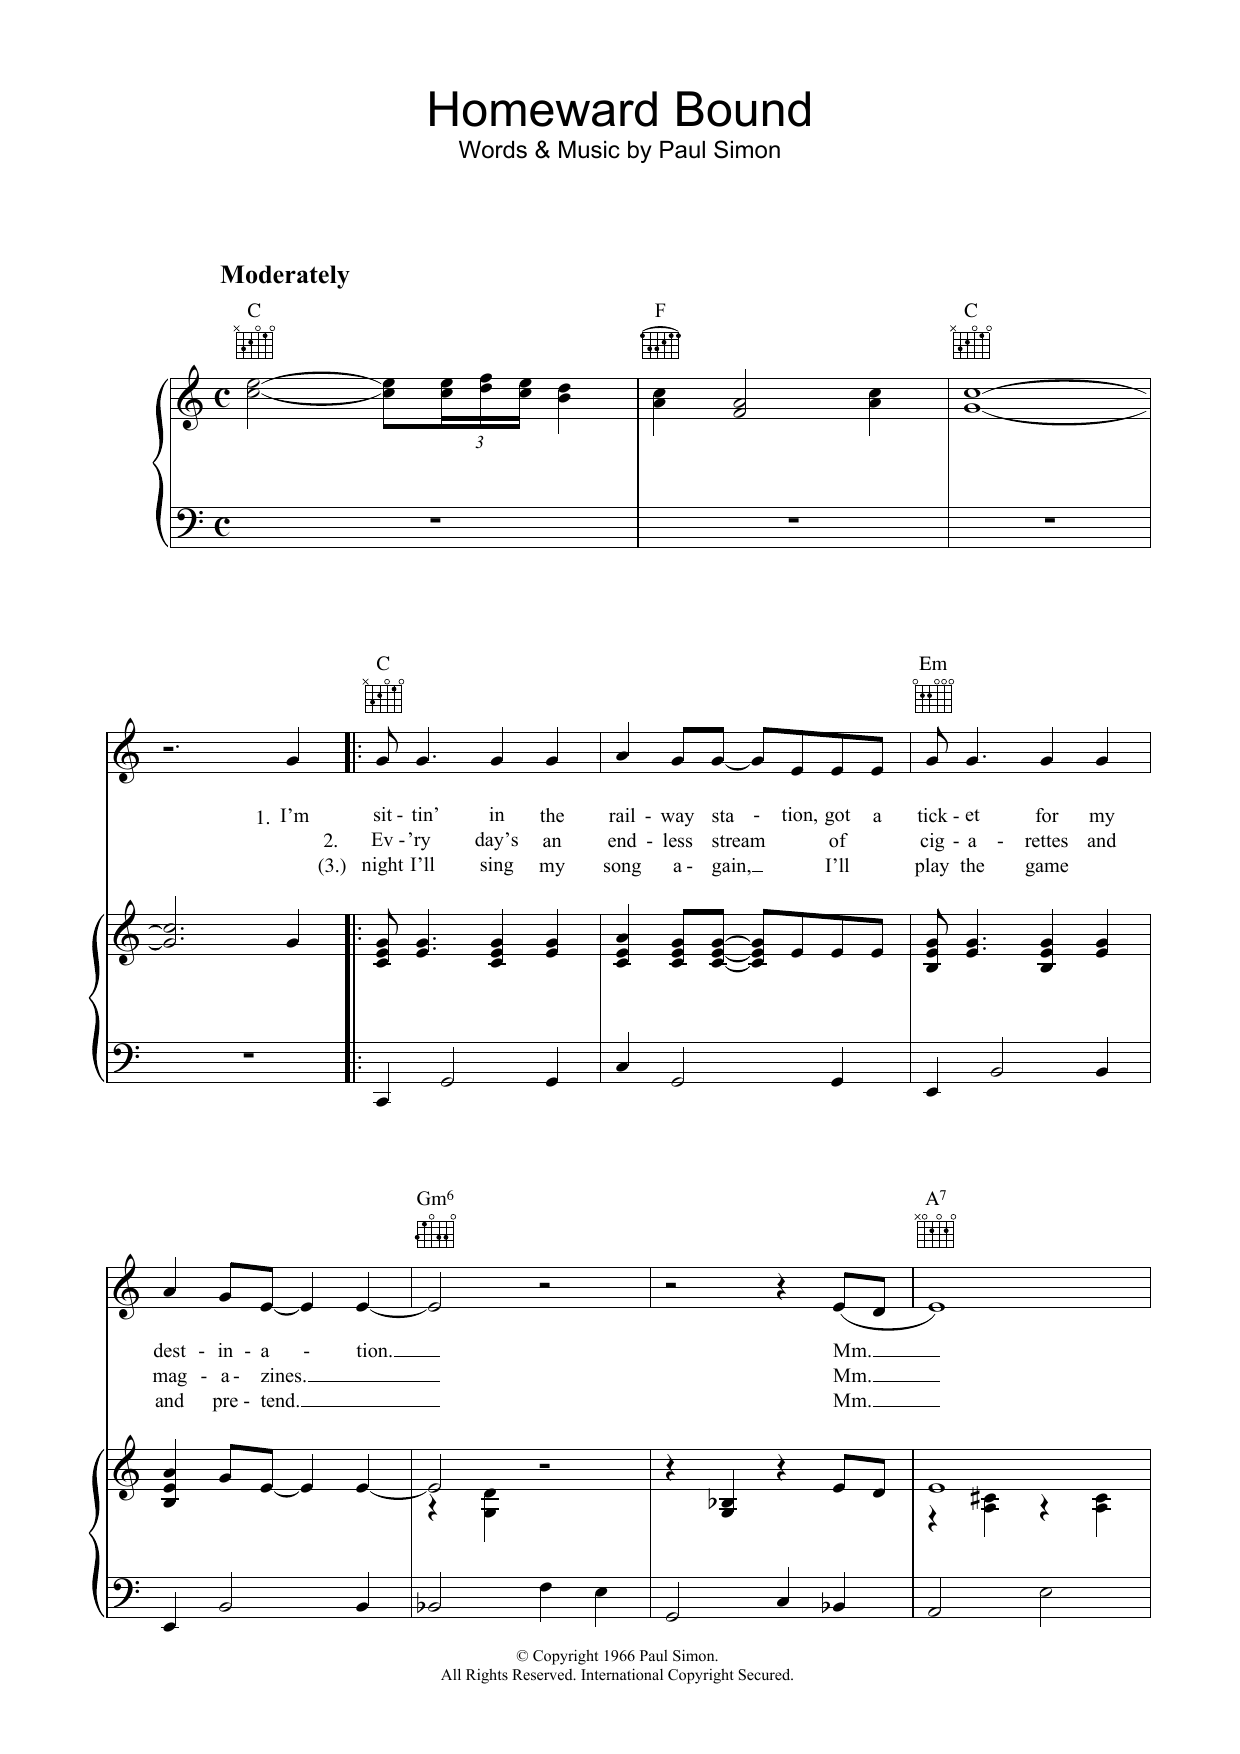 Simon & Garfunkel Homeward Bound Sheet Music Notes & Chords for Keyboard - Download or Print PDF